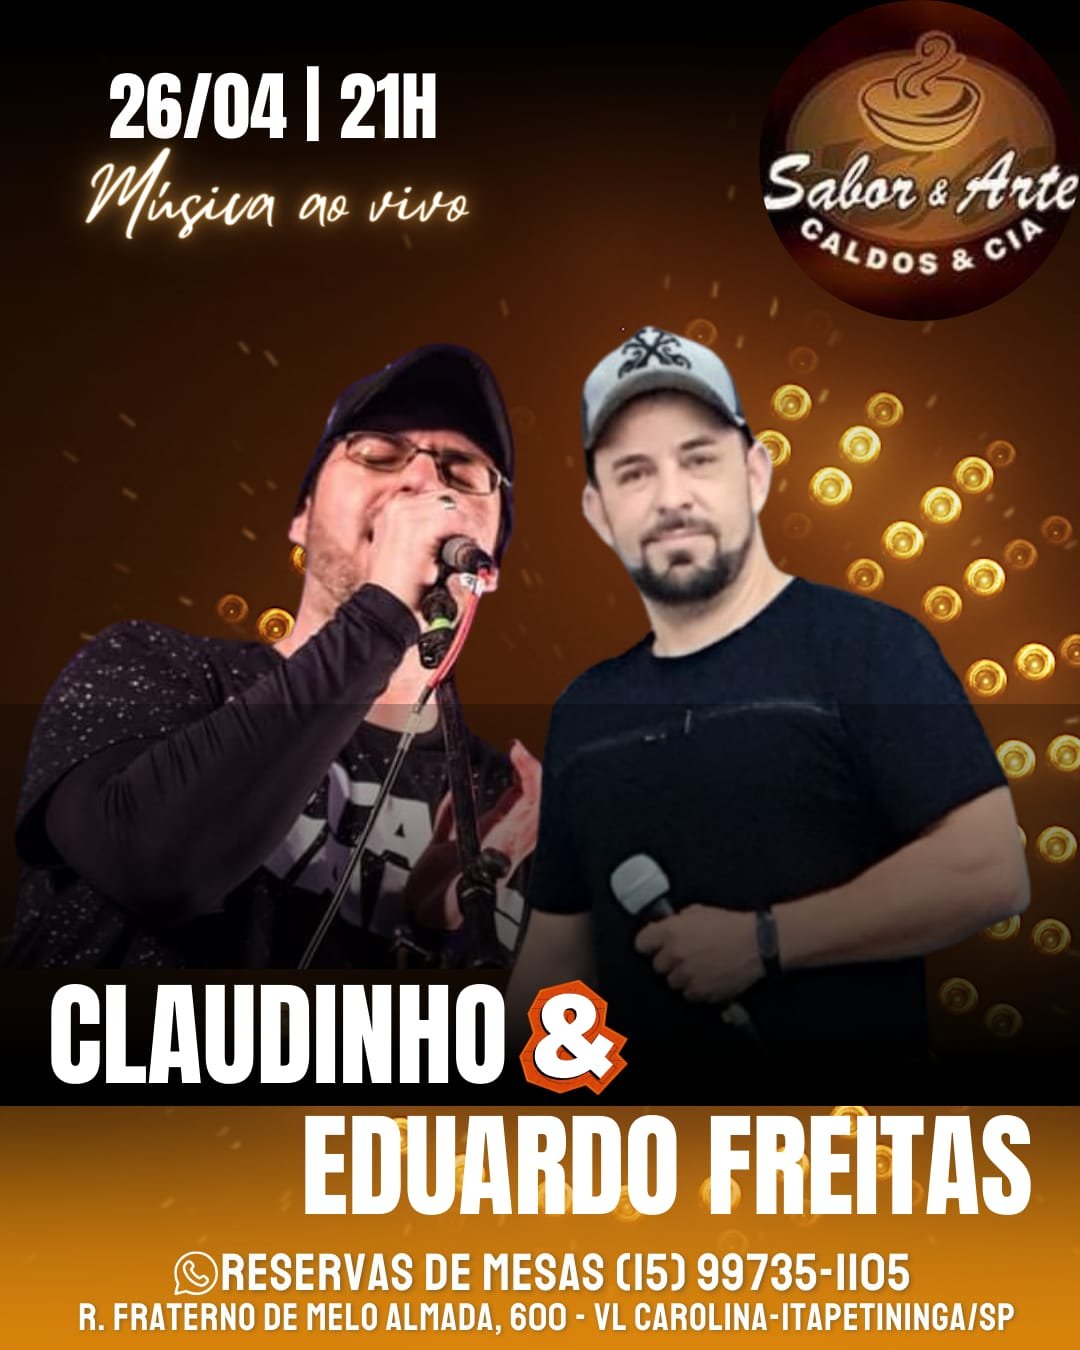 Claudinho e Eduardo Freitas realizam show em Itapetininga nesta sexta, 26 - Divulgação